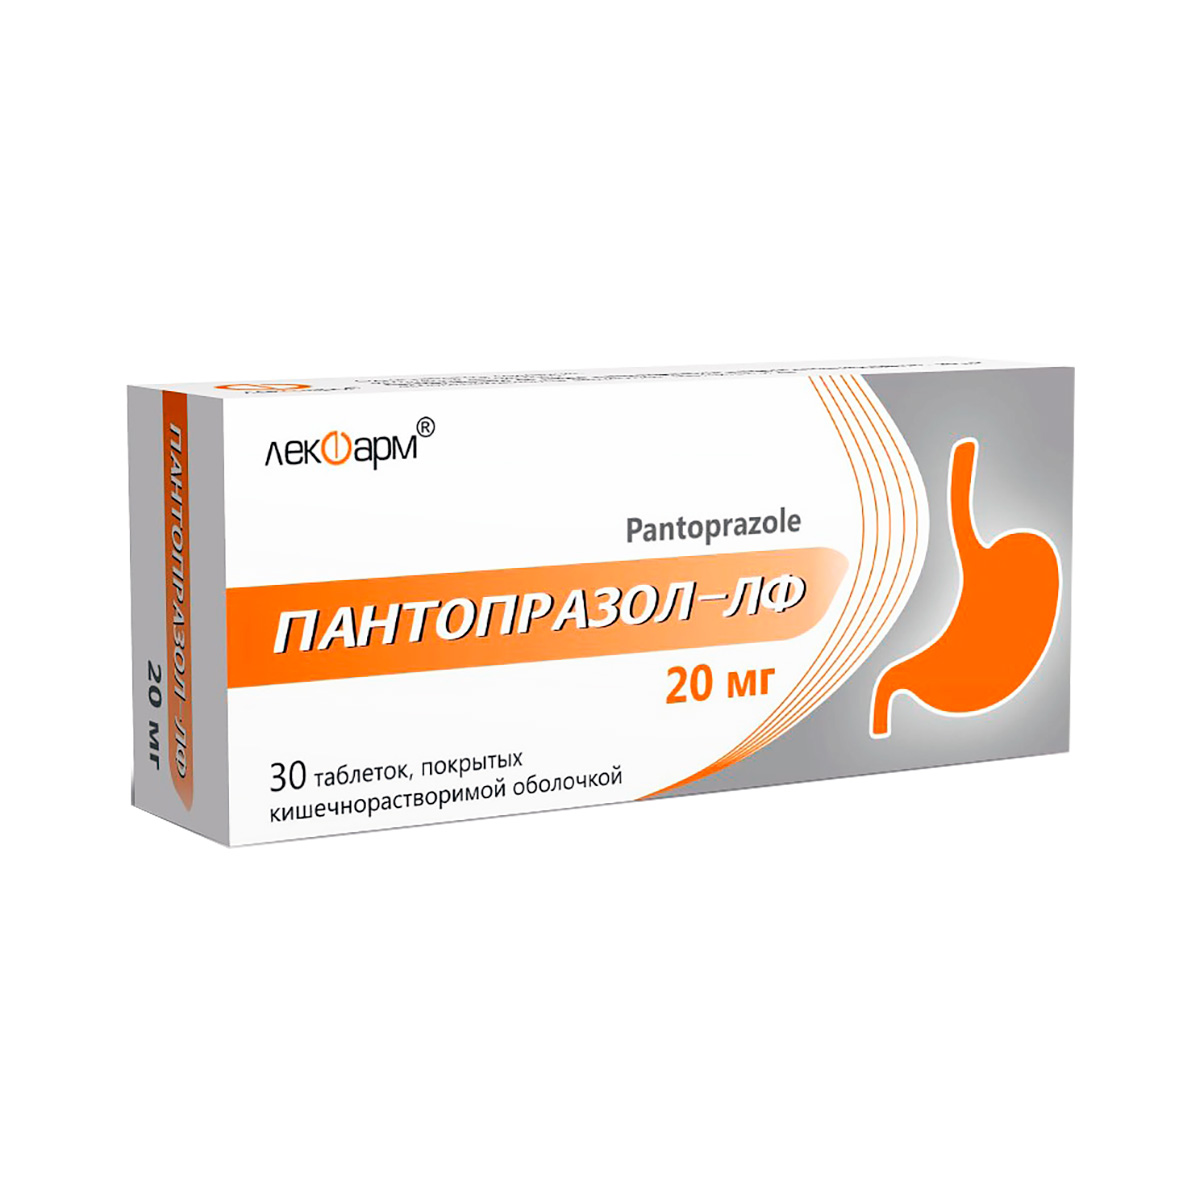 Пантопразол-ЛФ 20 мг таблетки кишечнорастворимые 30 шт